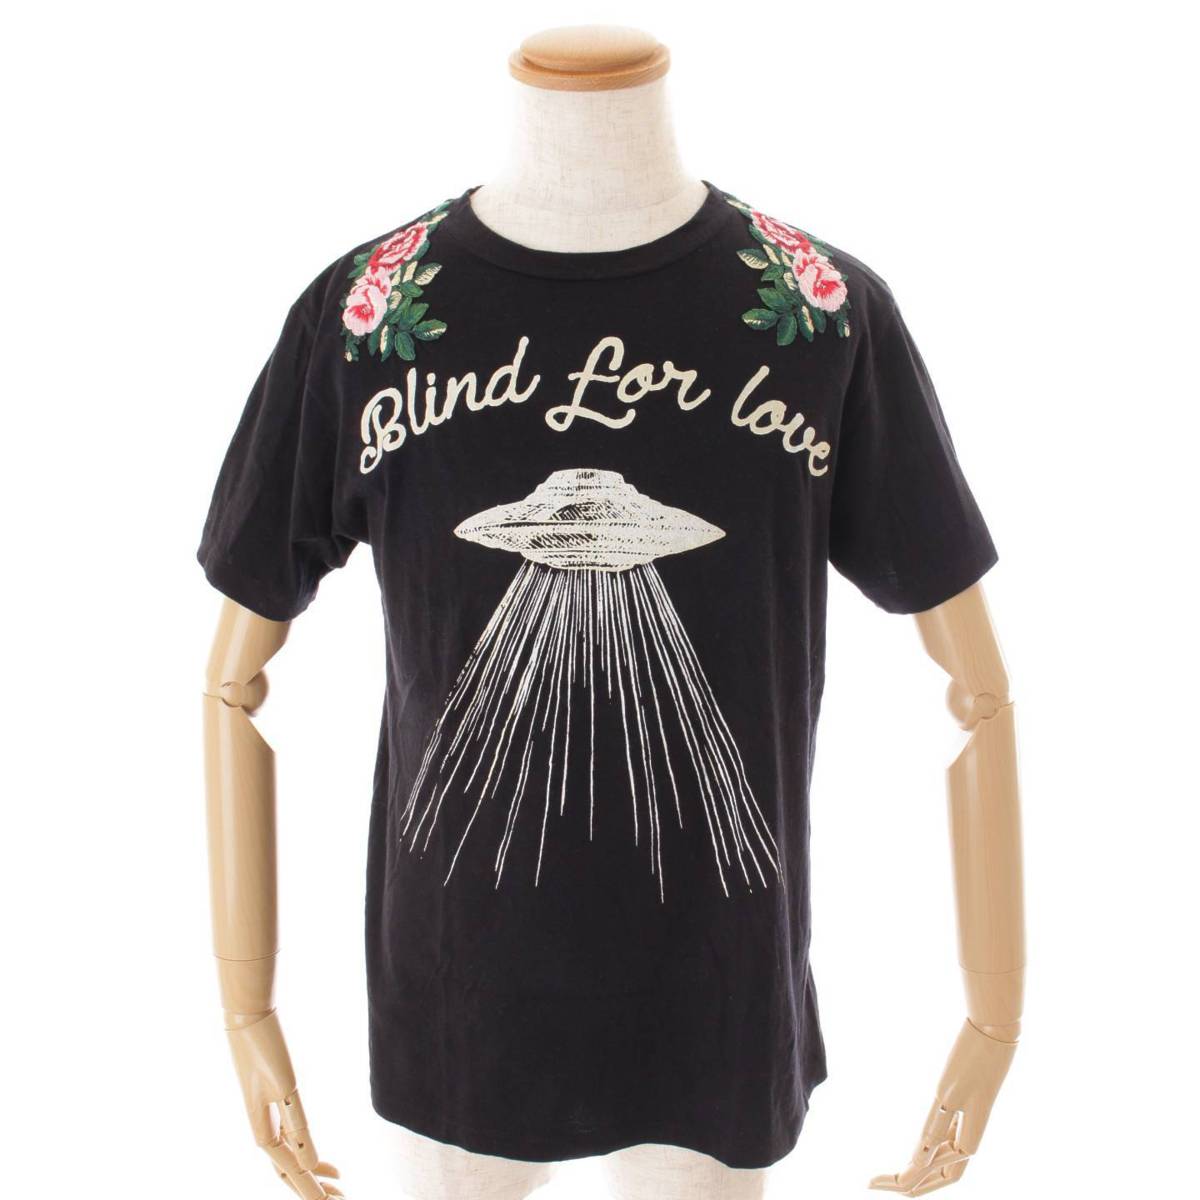 グッチ(Gucci) BLIND FOR LOVE UFOプリント Tシャツ トップス 469307 ...